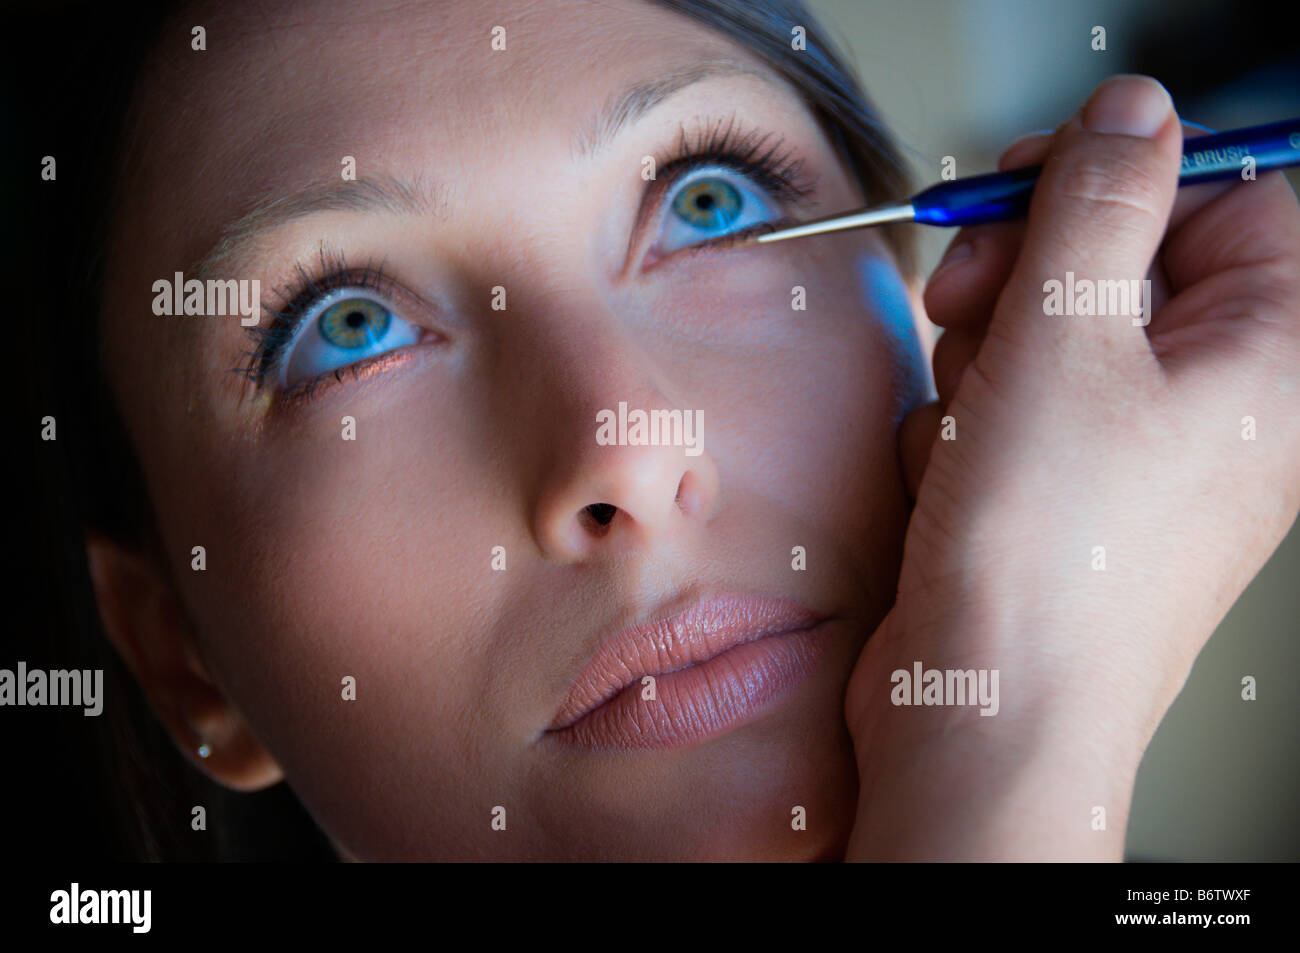 Woman applying eyeliner Stock Photo